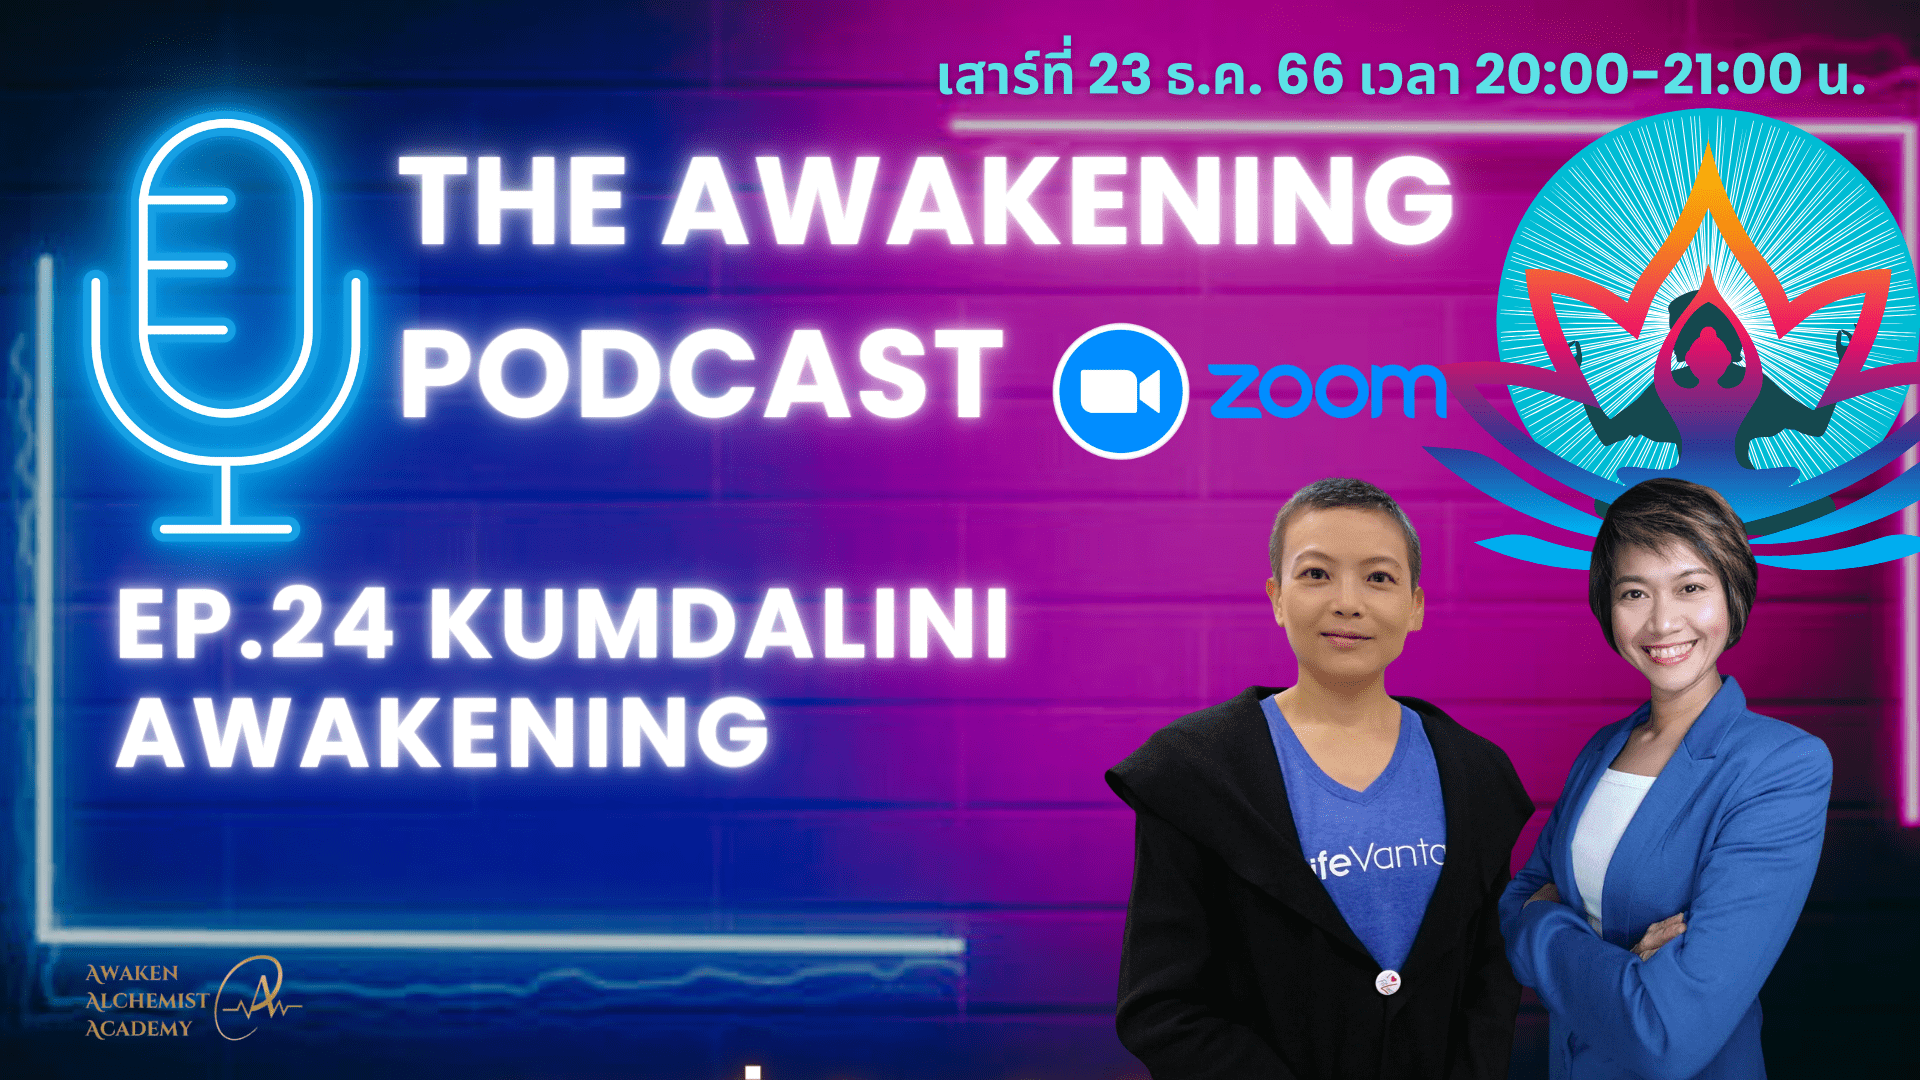 Ep.24 Kundalini Awakening I